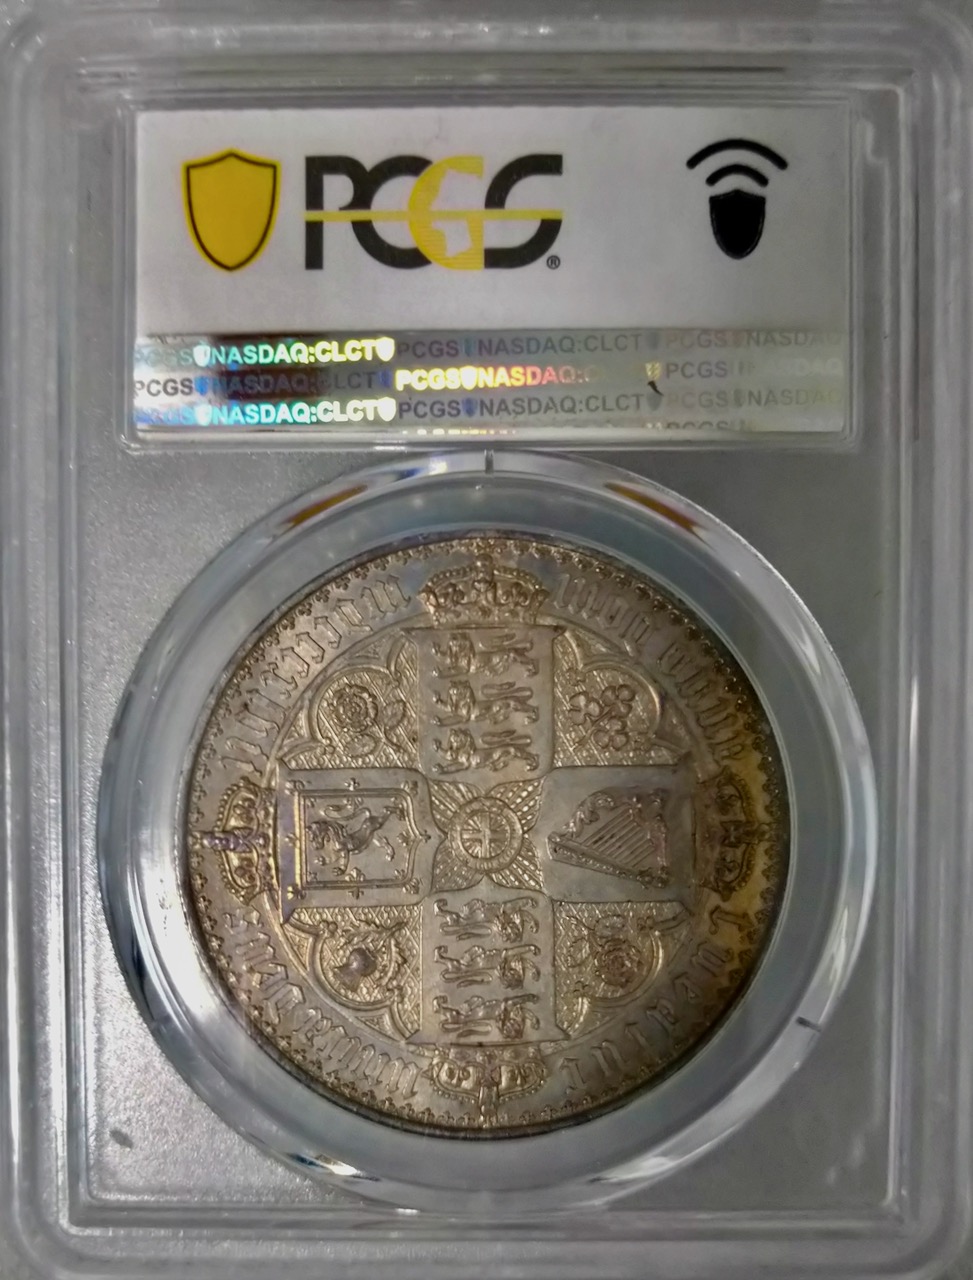 イギリス1847年ゴシッククラウン銀貨PCGS PR62画像